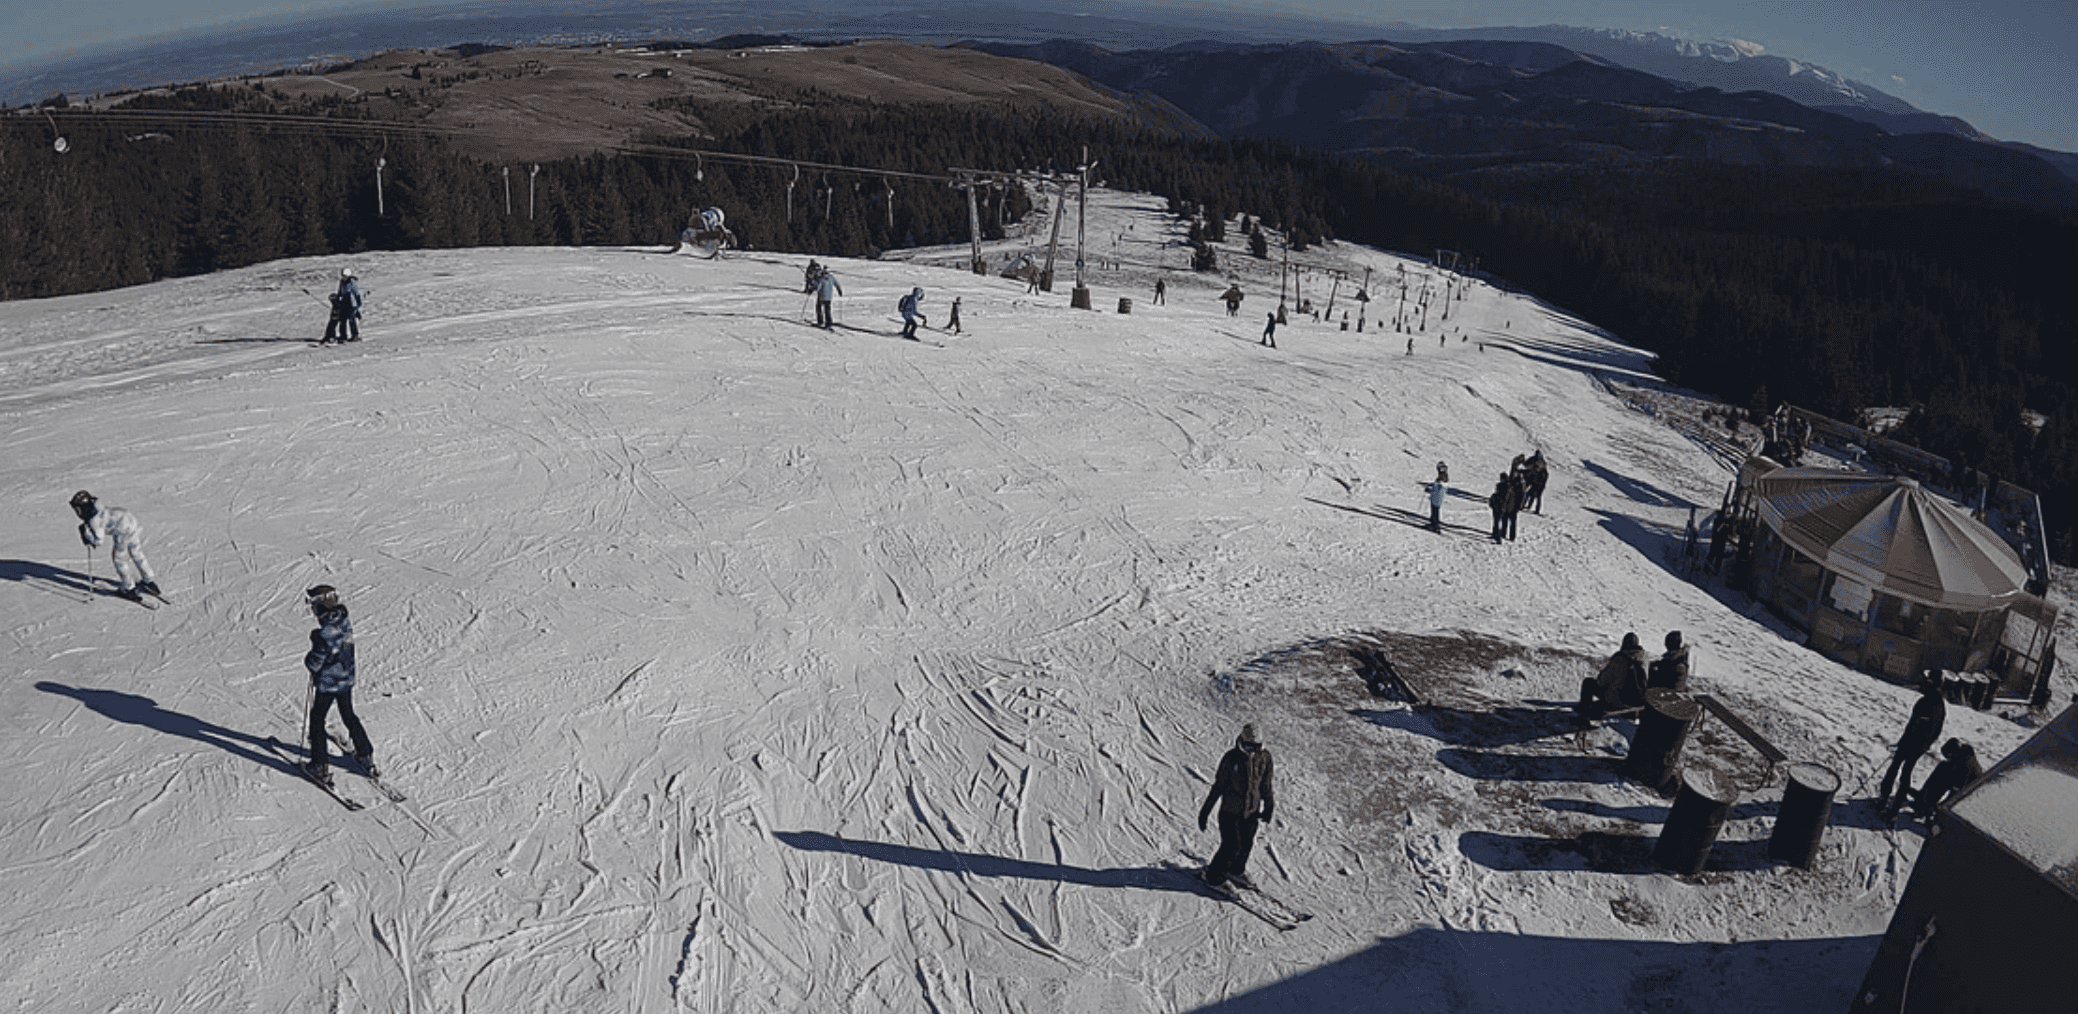 condiții excelente de schi la păltiniş, cu zăpadă artificială